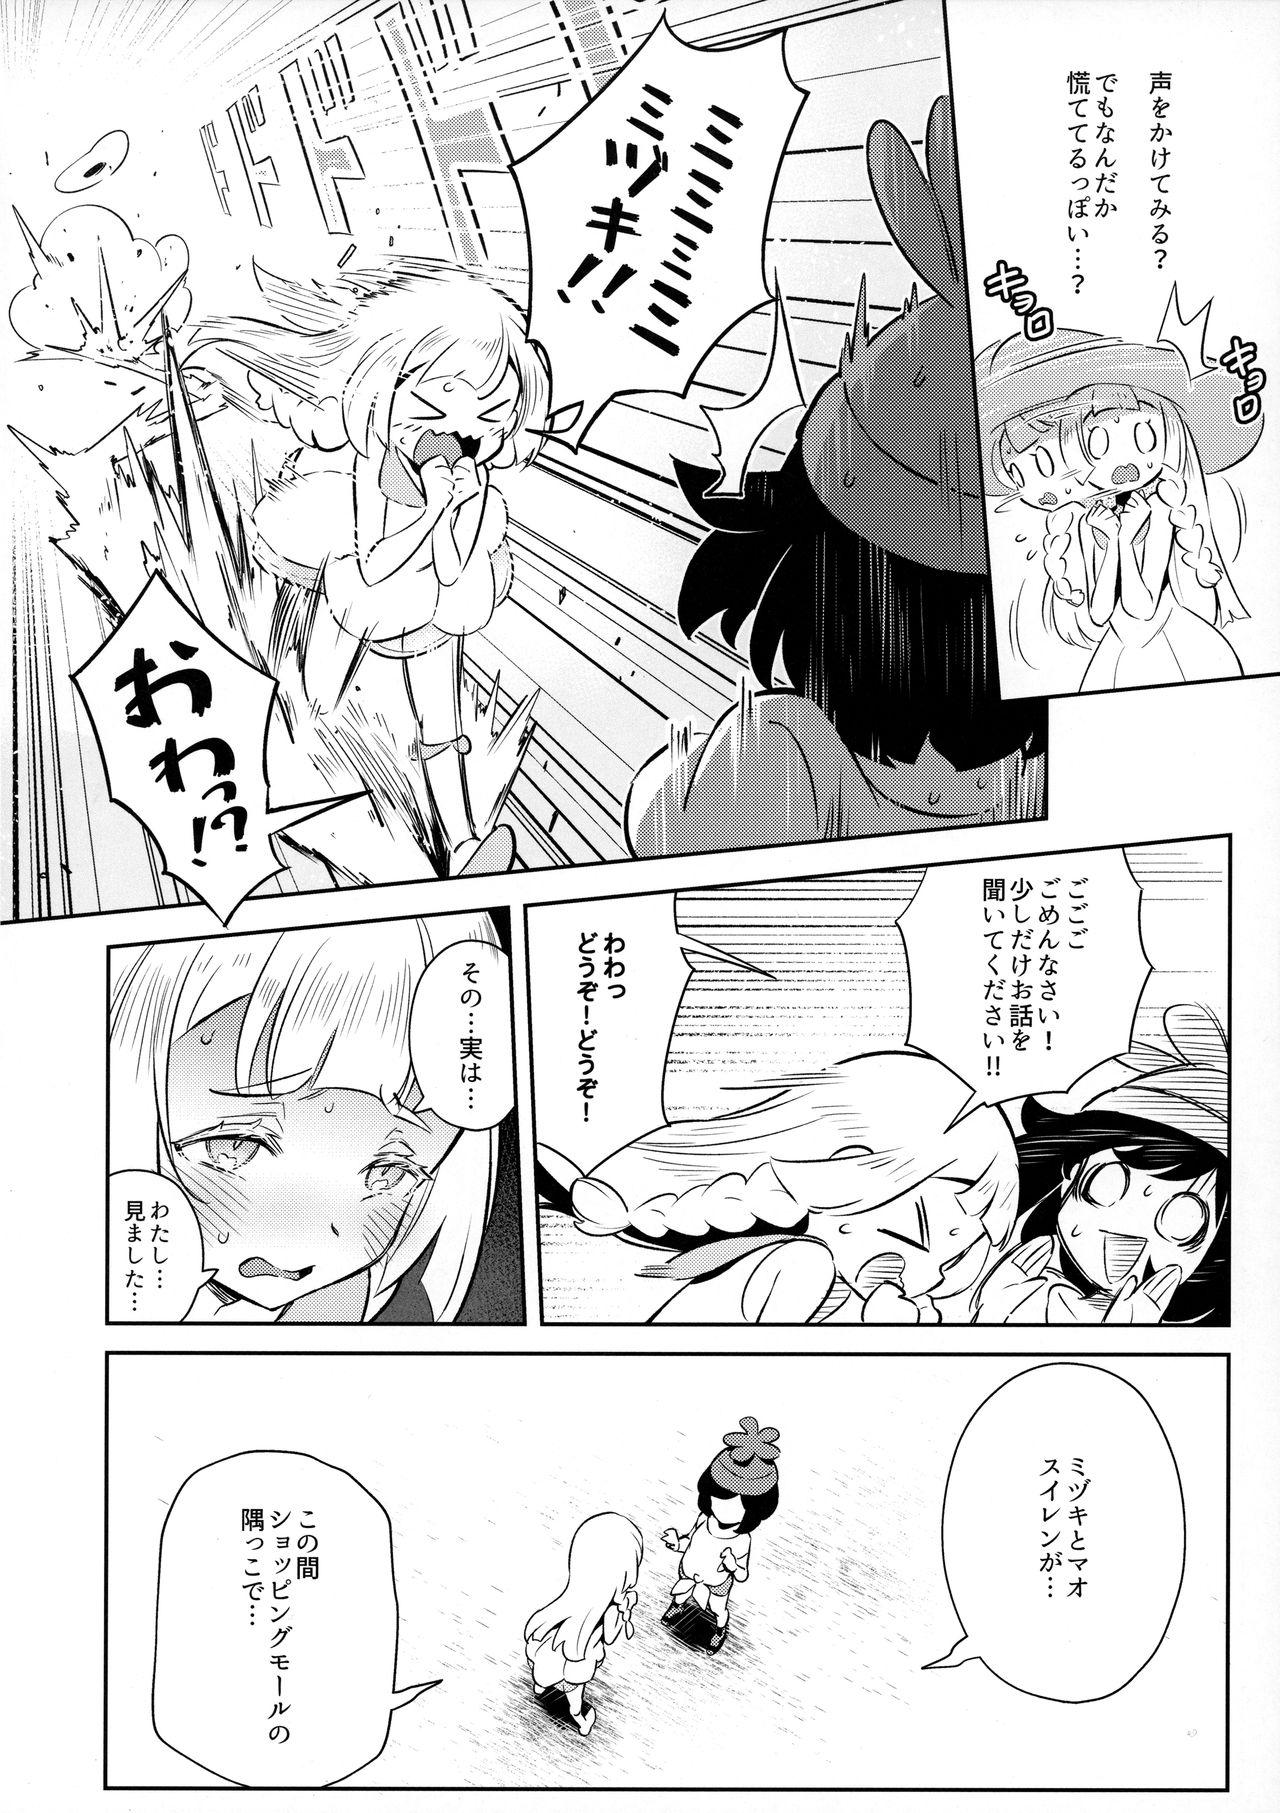 Internal Onnanoko-tachi no Himitsu no Bouken 2 - Pokemon | pocket monsters Gilf - Page 4